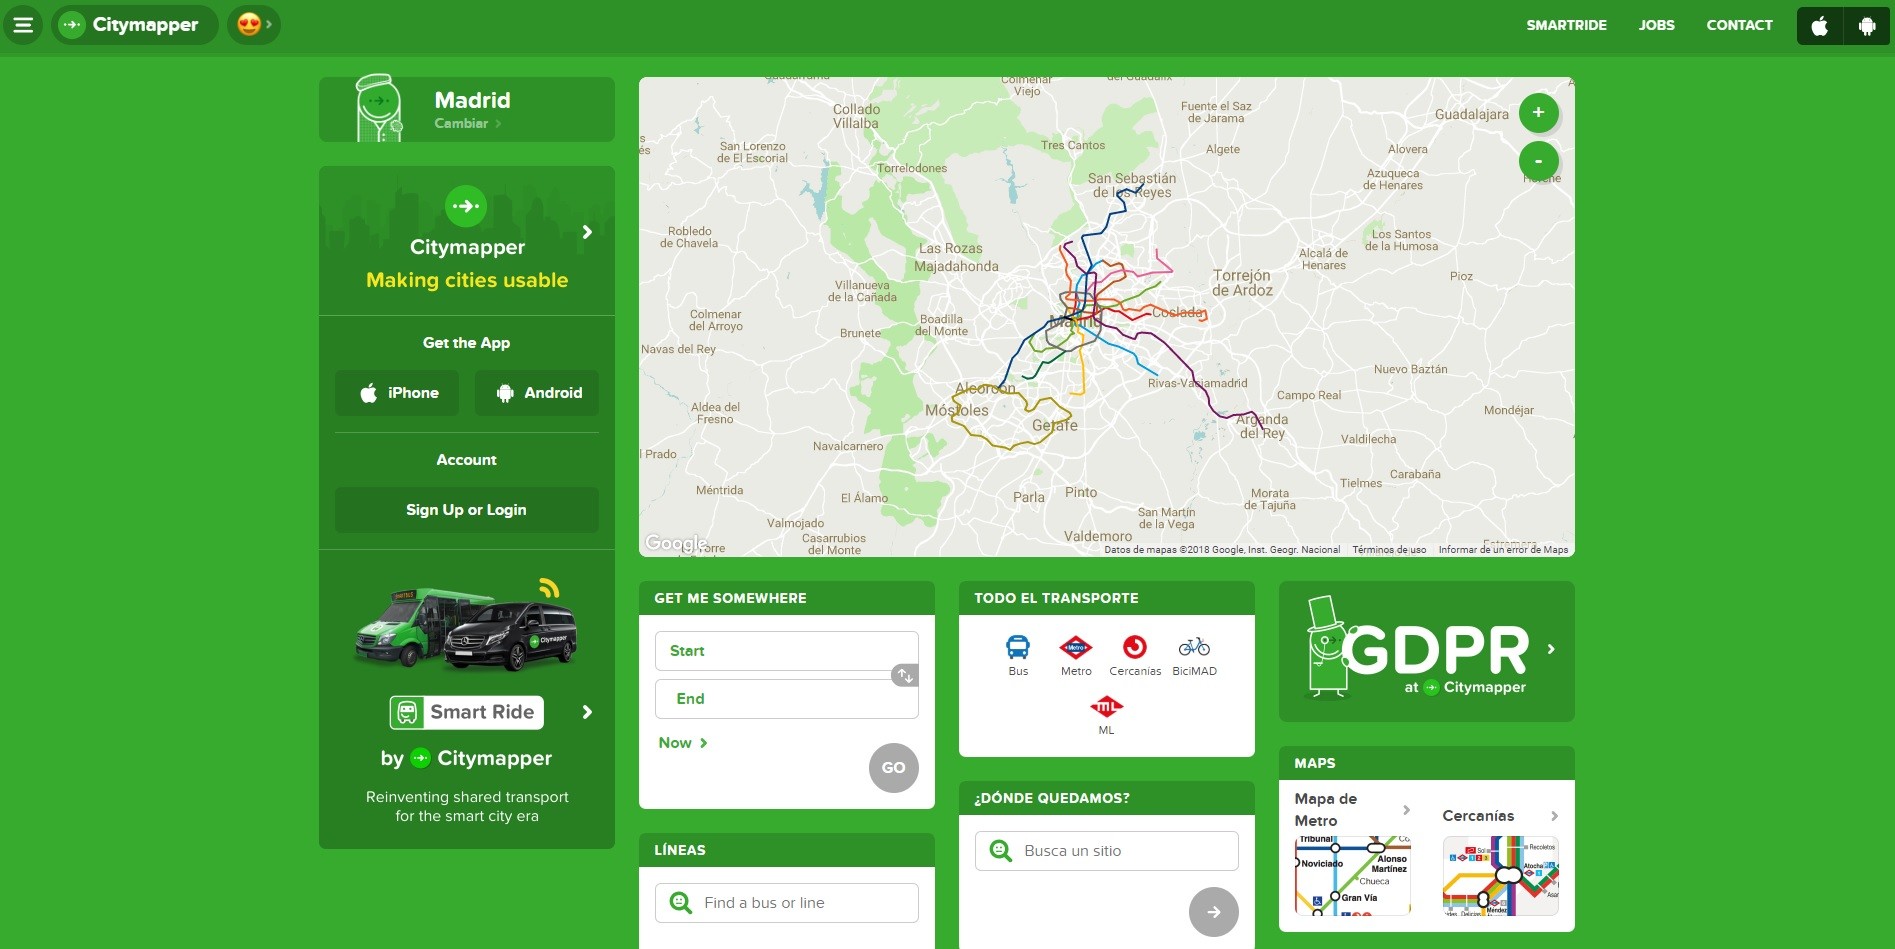 Citymapper es una de las apps de transporte público más usadas